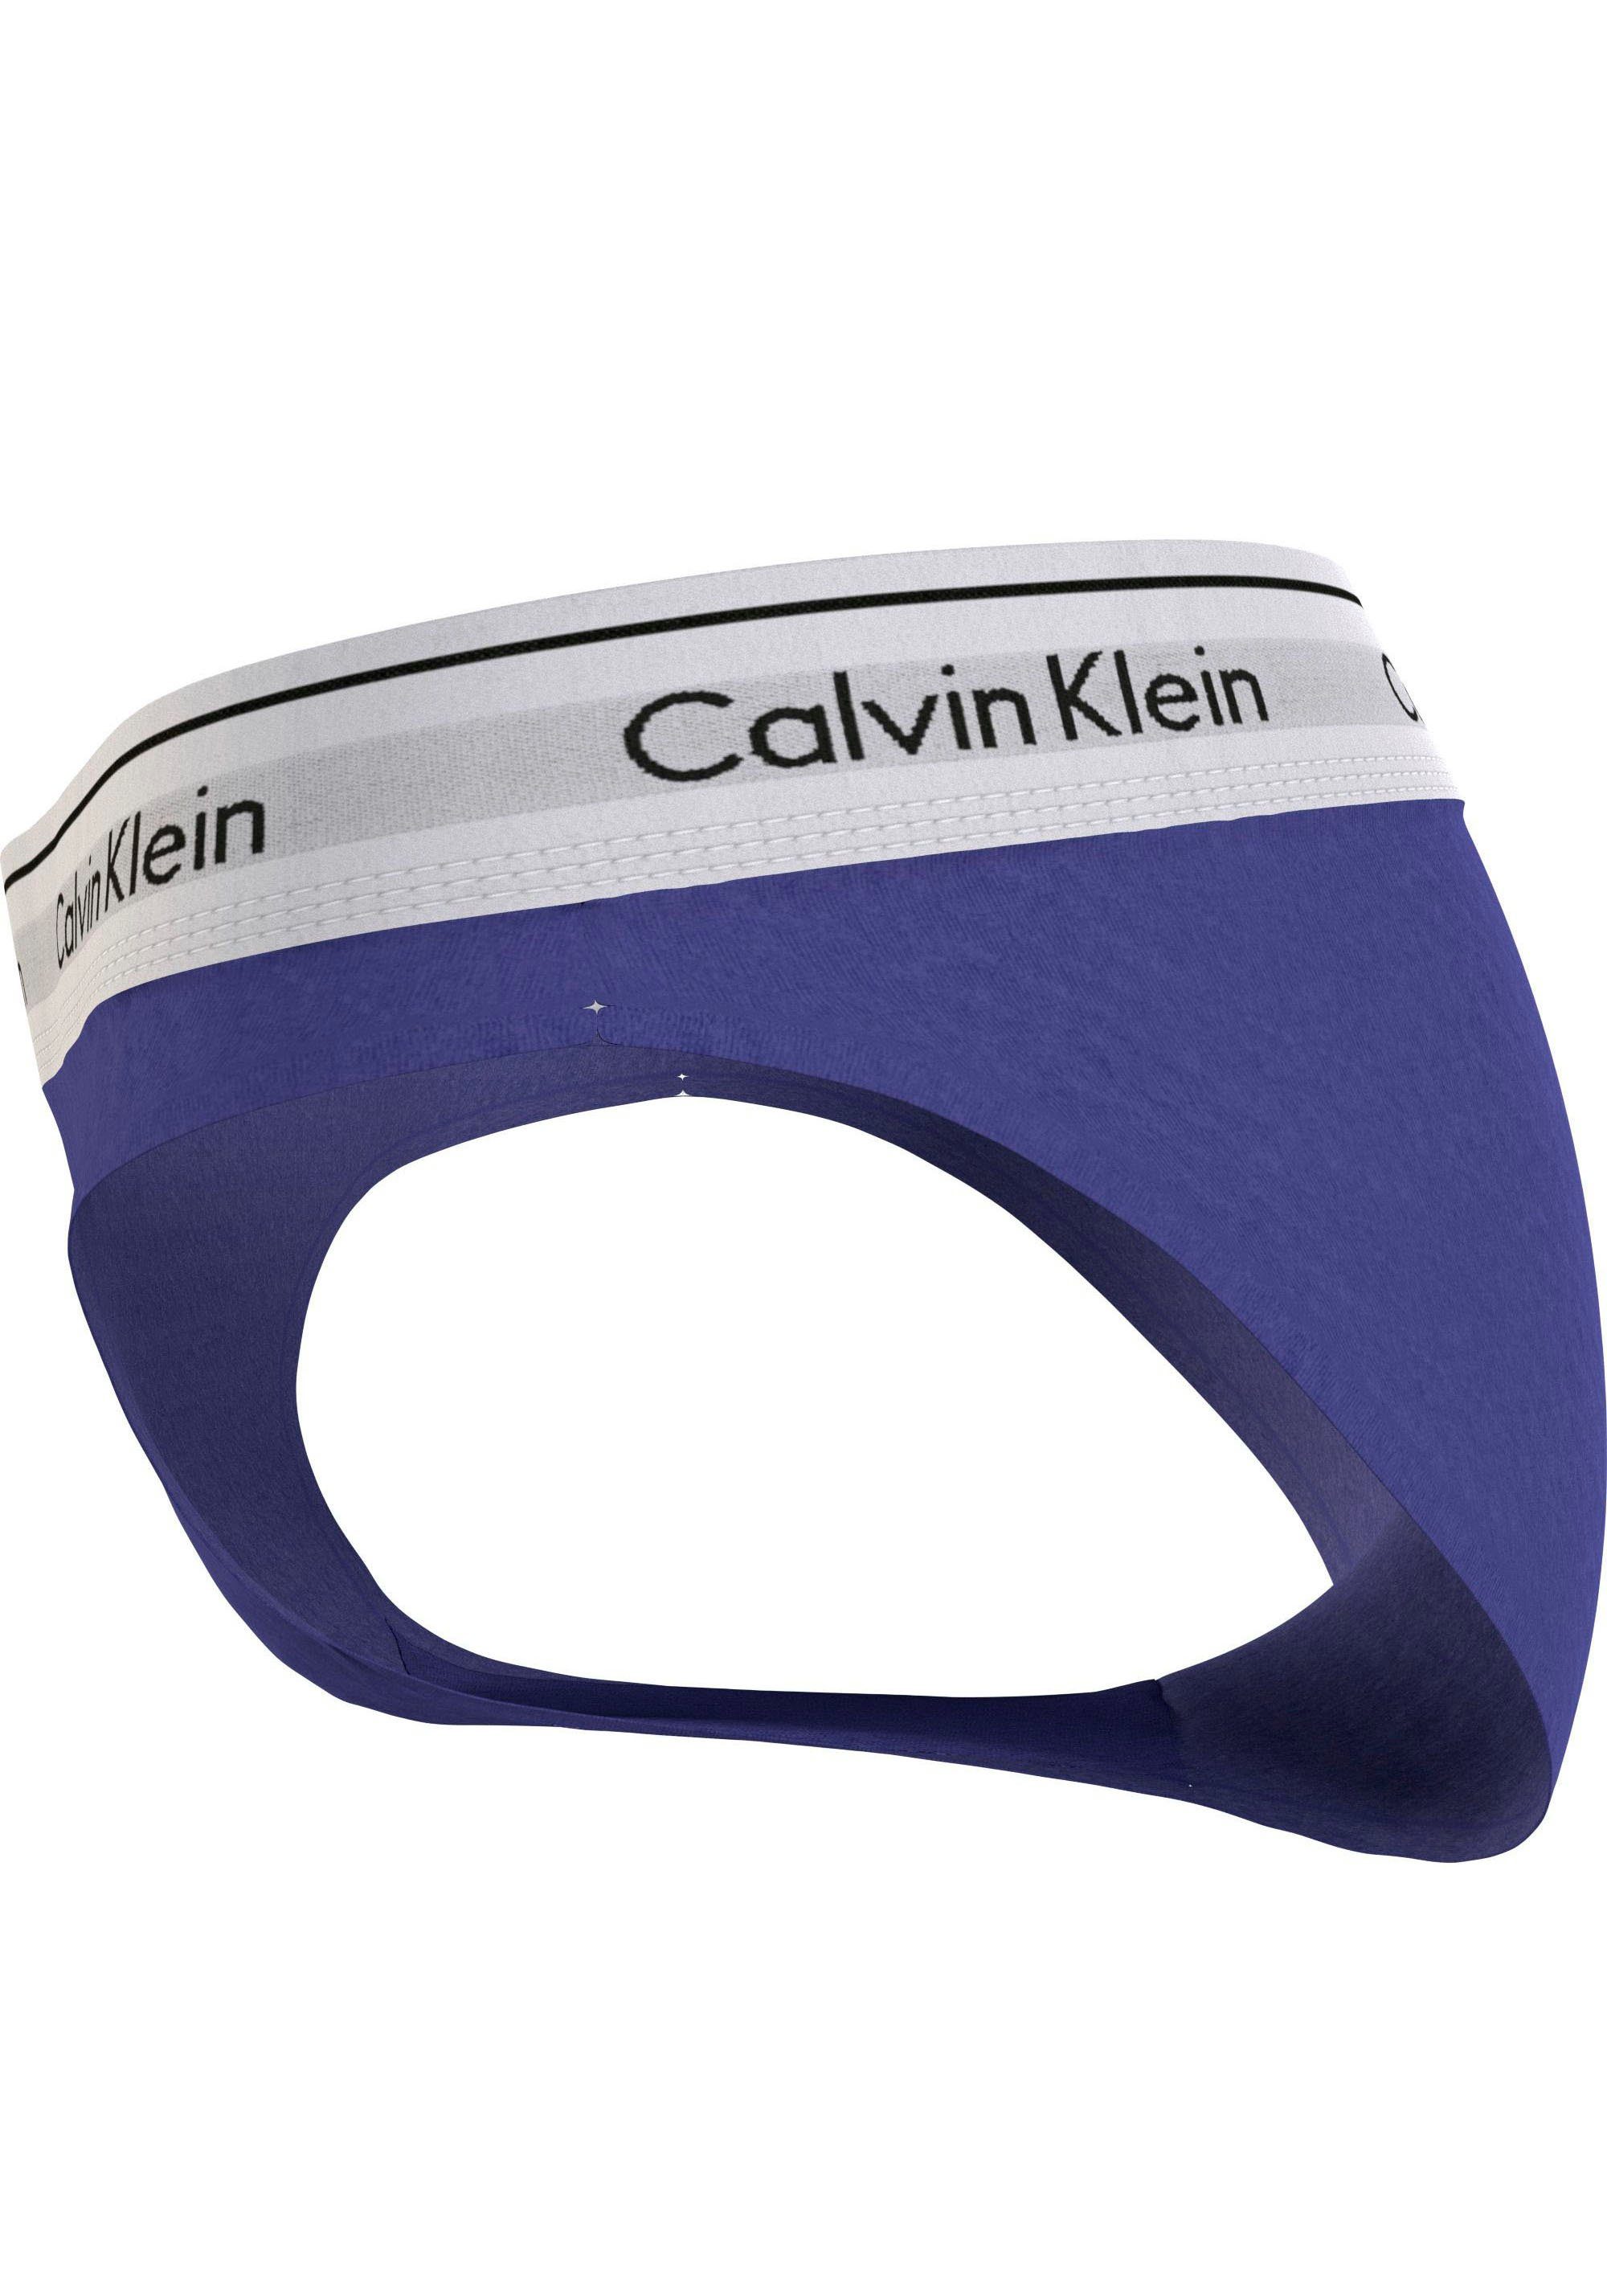 mit Bikinislip Underwear Klein klassischem Calvin blau Logo BIKINI